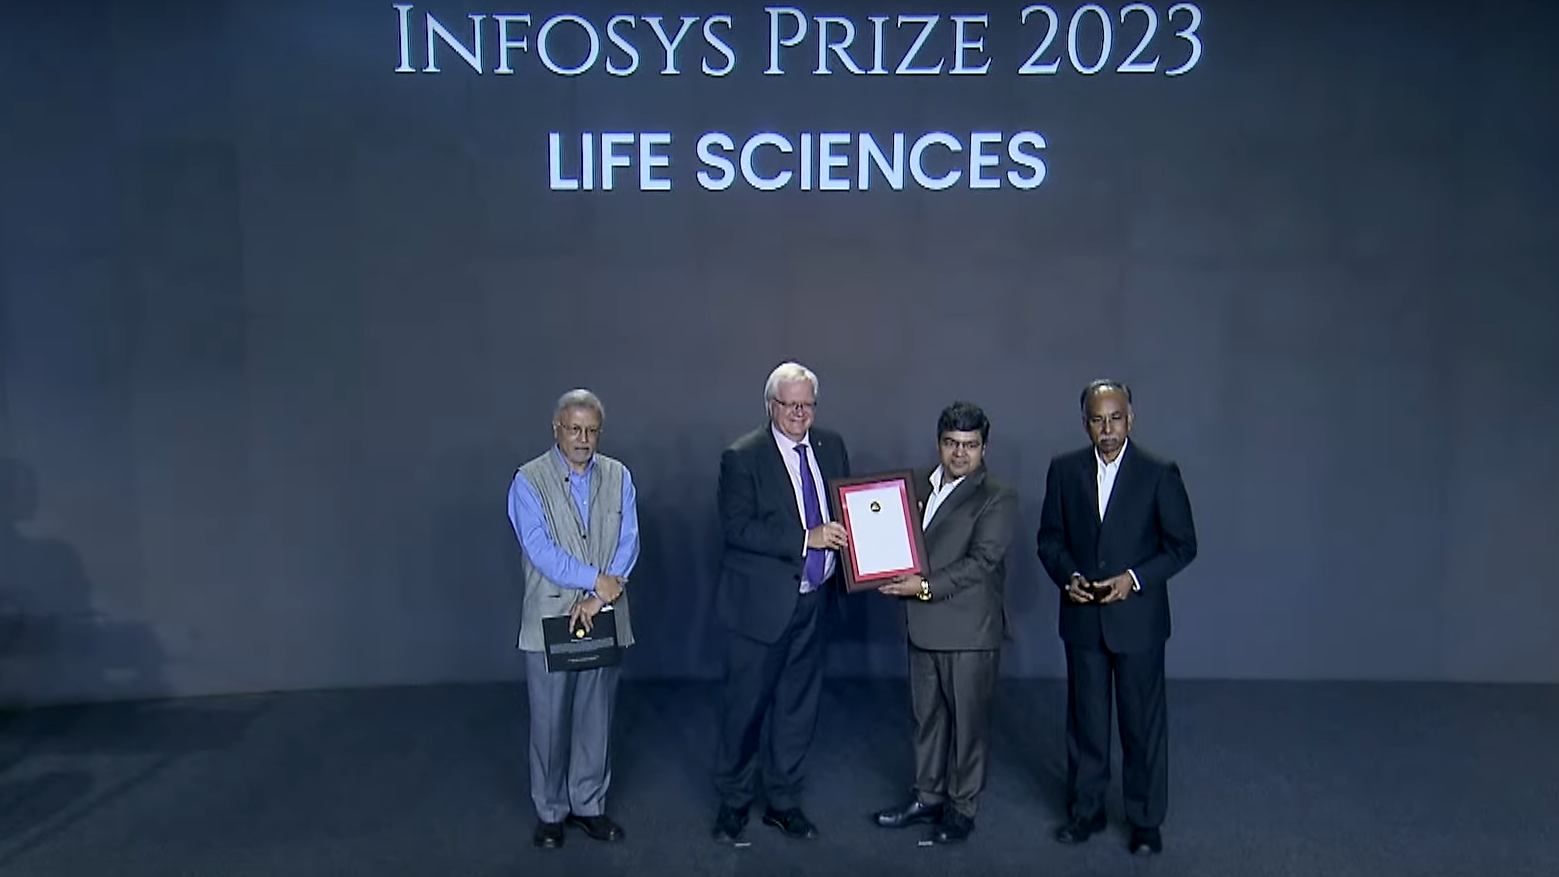 Arun Kumar Shukla recieving the Infosys Prize 2023